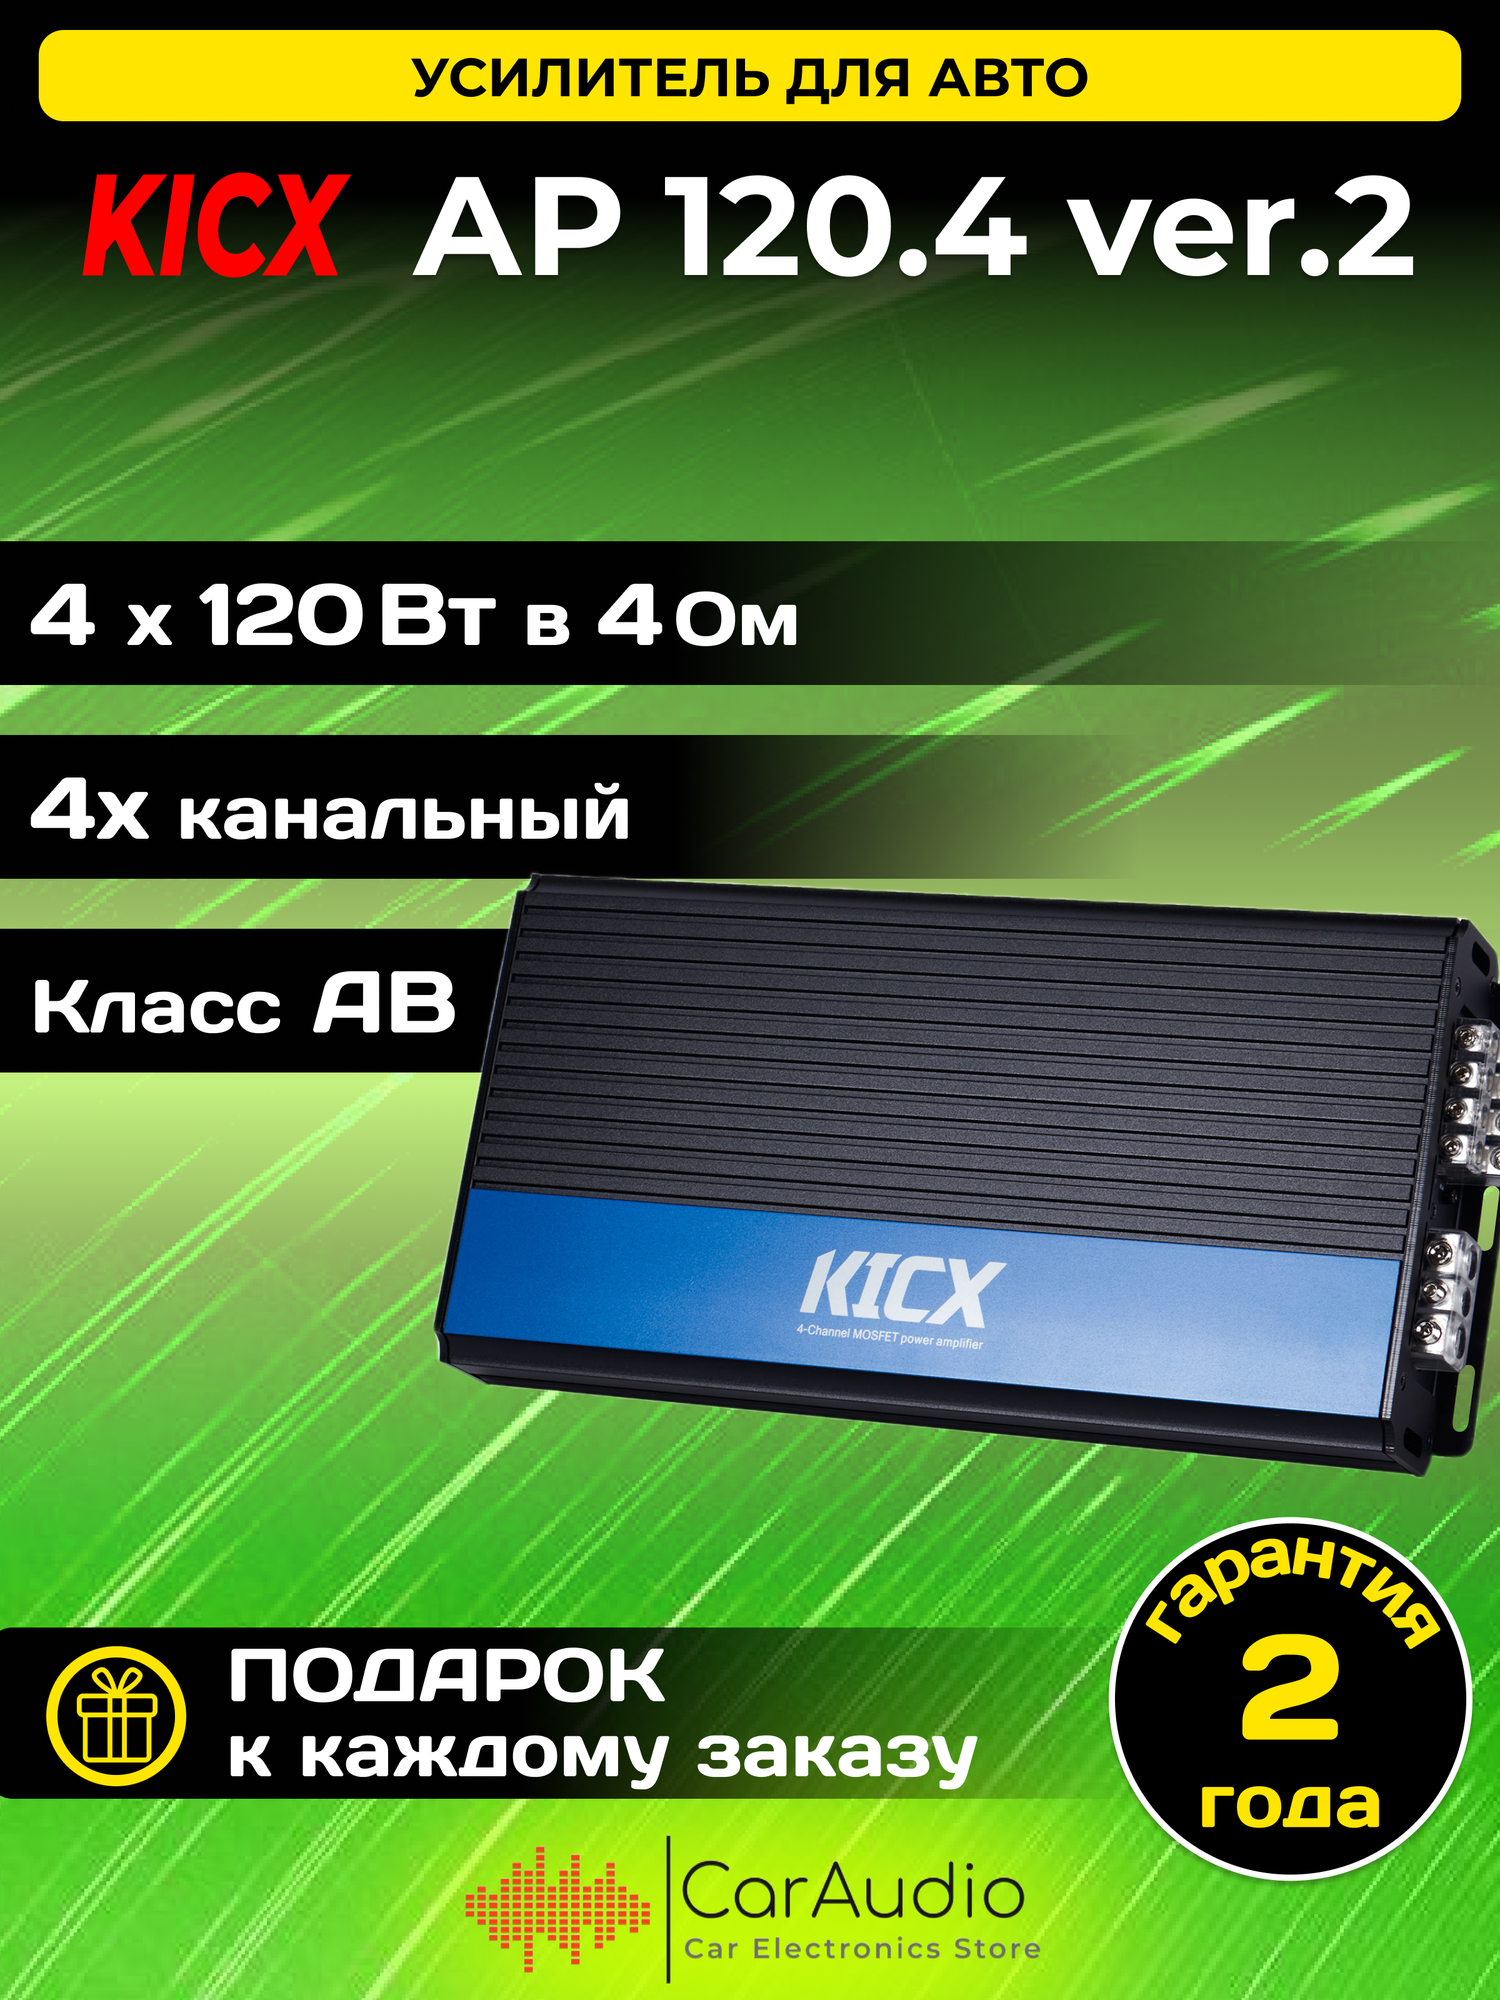 KICX AP 120.4 VER.2 Усилитель автомобильный 4х120Вт KICX